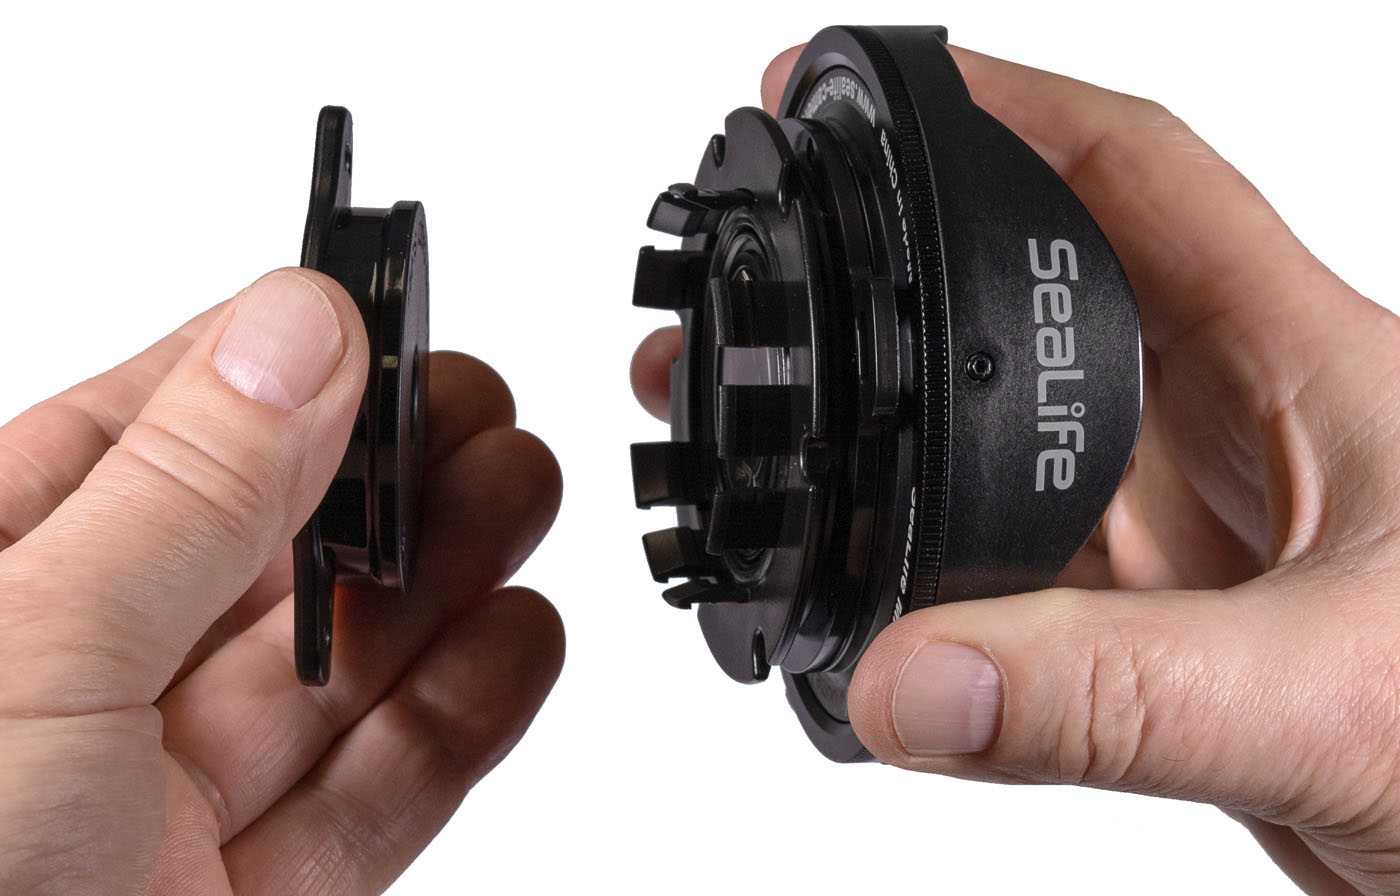 SeaLife Lens Caddy für Micro, ReefMaster und DC-Serie Objektive